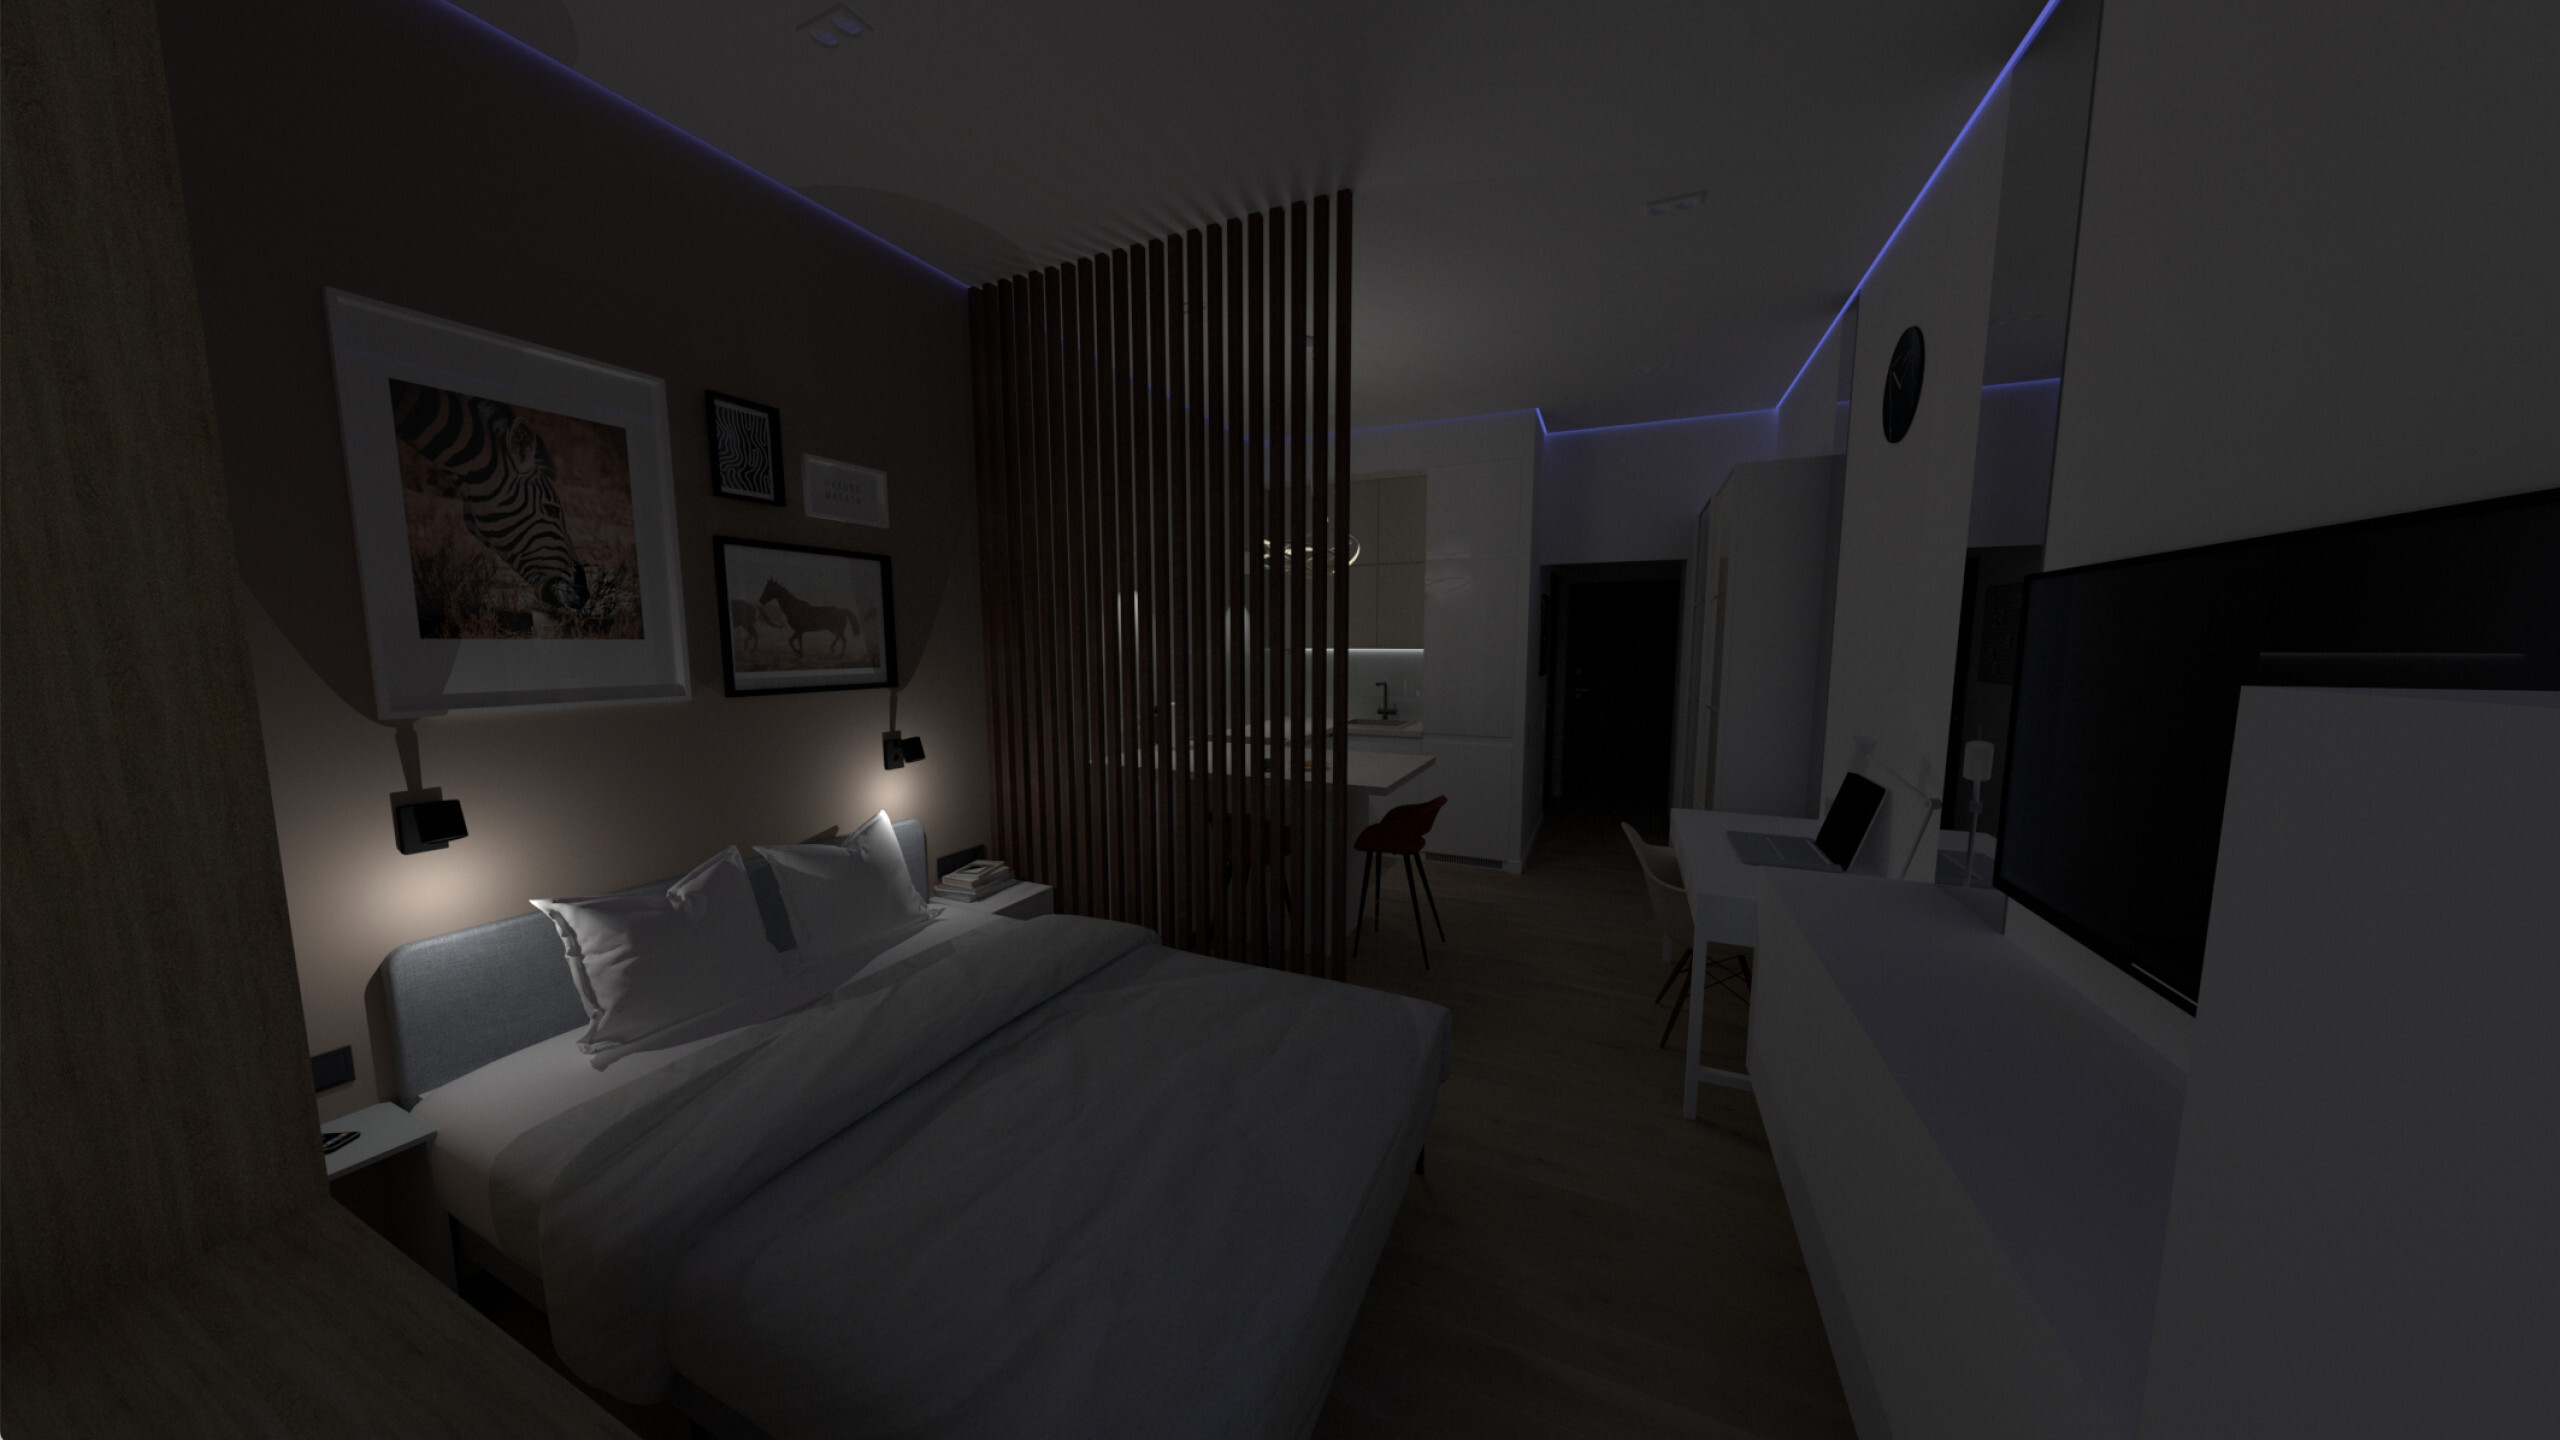 Интерьер спальни c рабочим местом, нишей с подсветкой, рейками с подсветкой, подсветкой настенной, подсветкой светодиодной, светильниками над кроватью и с подсветкой